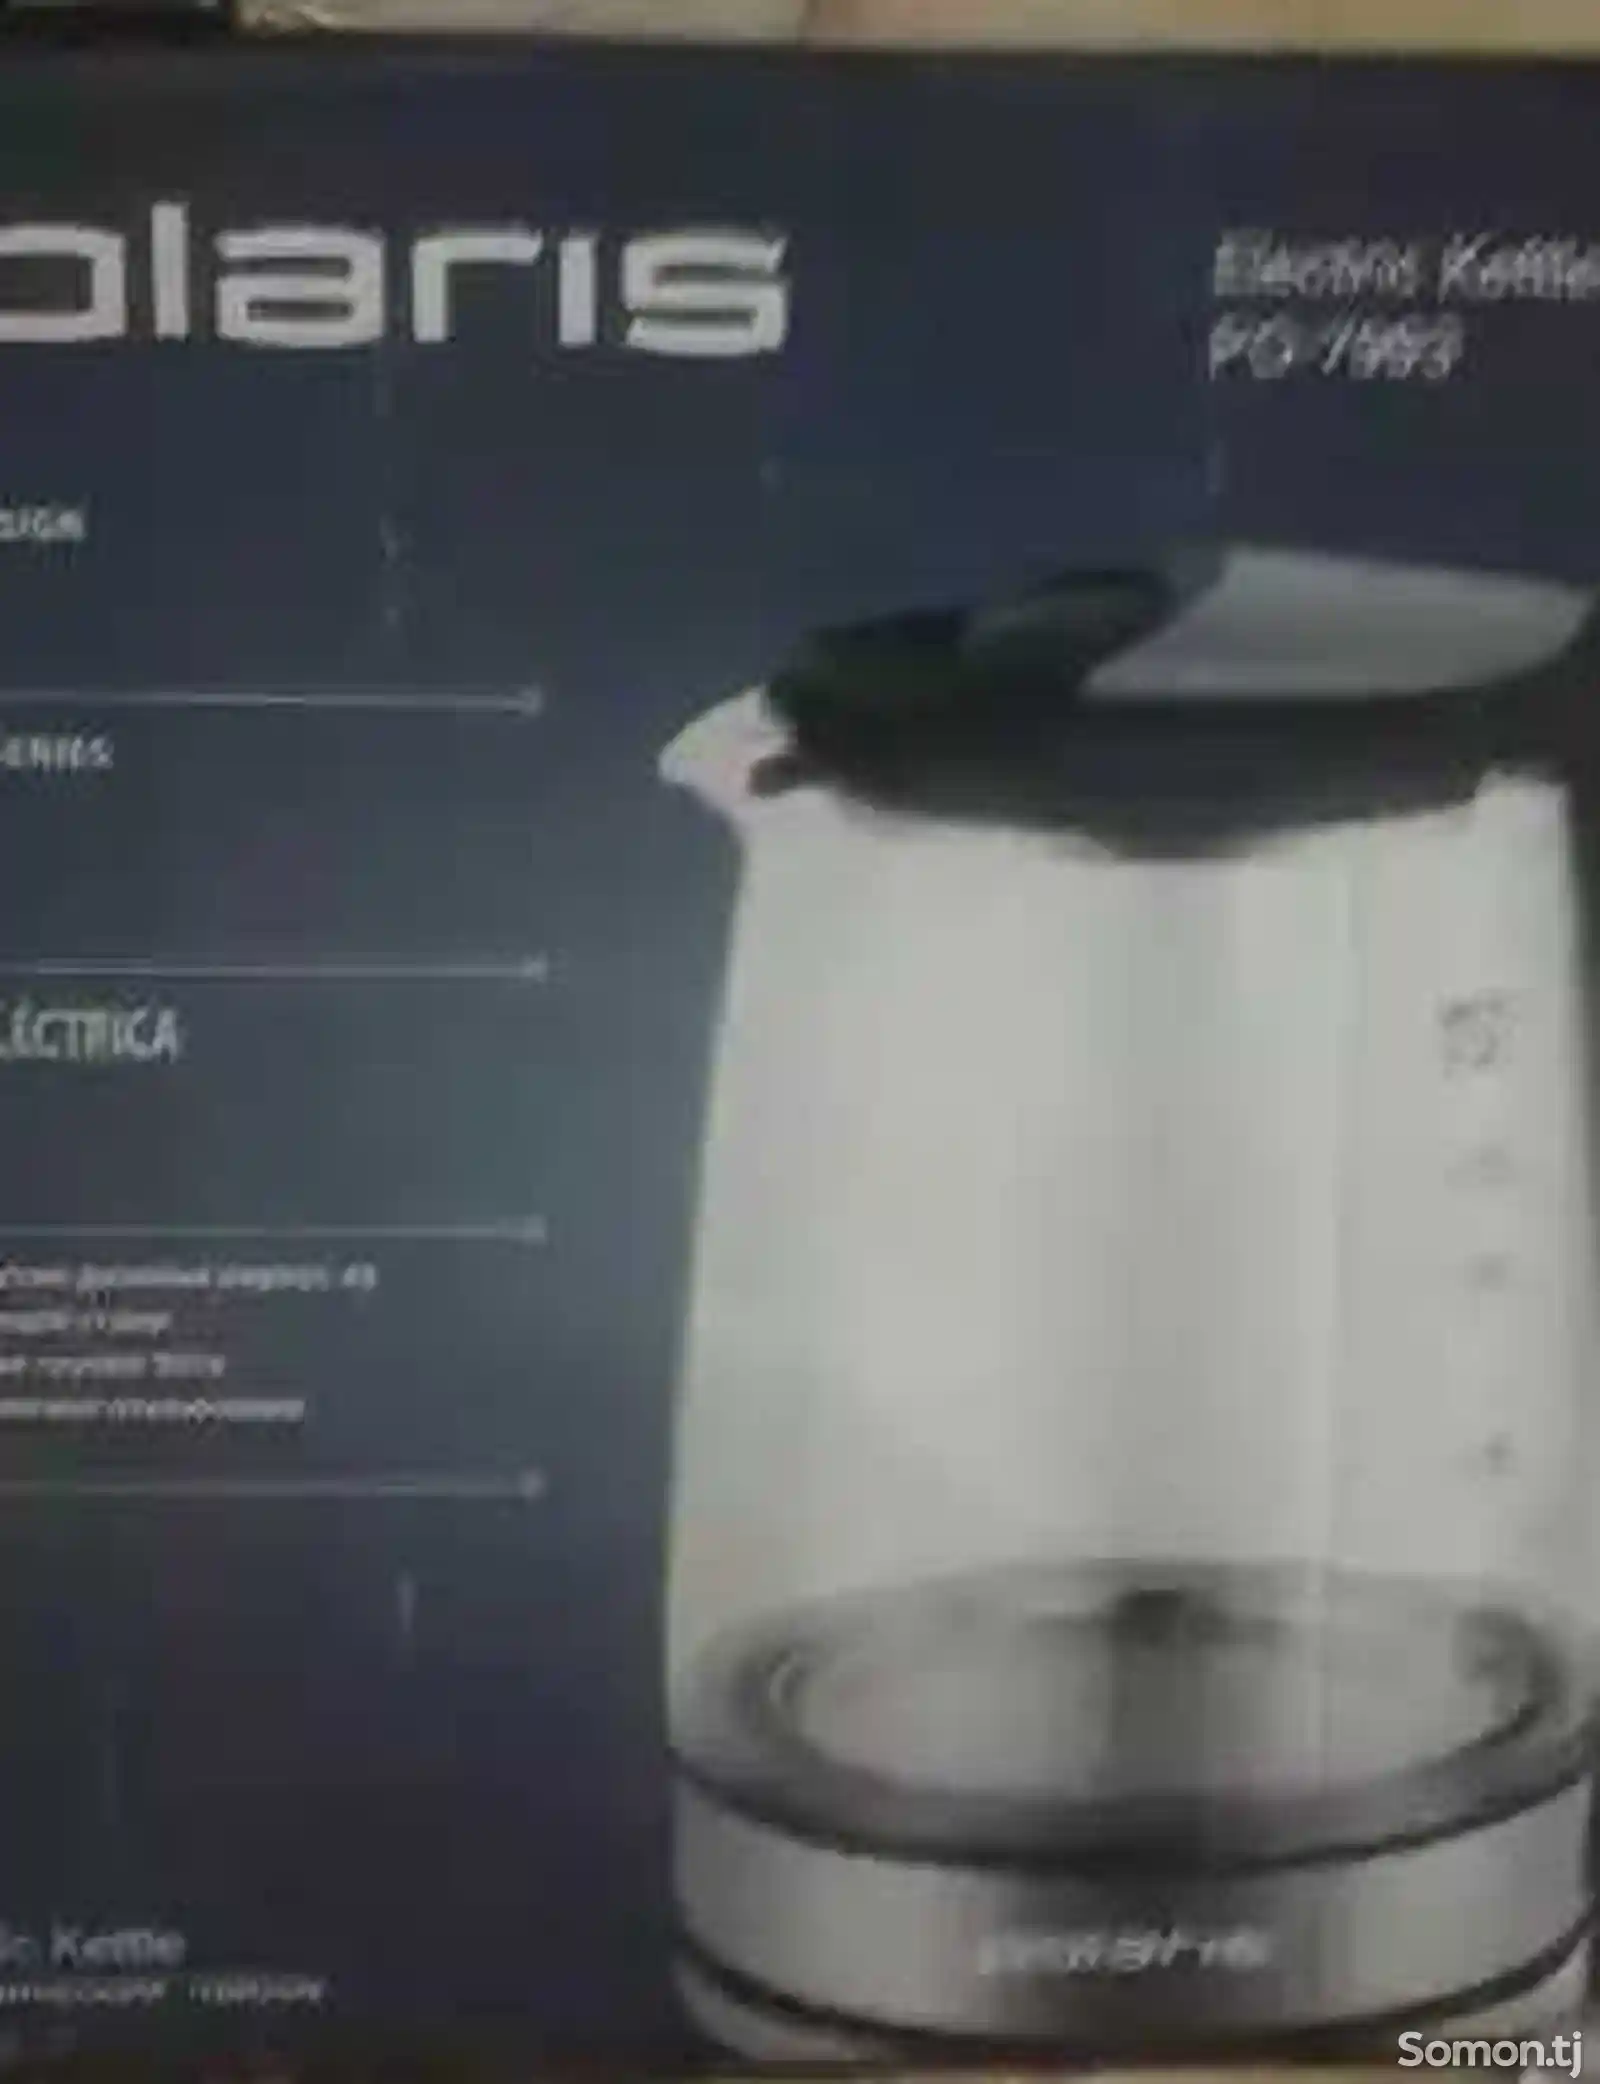 Чайник Polaris